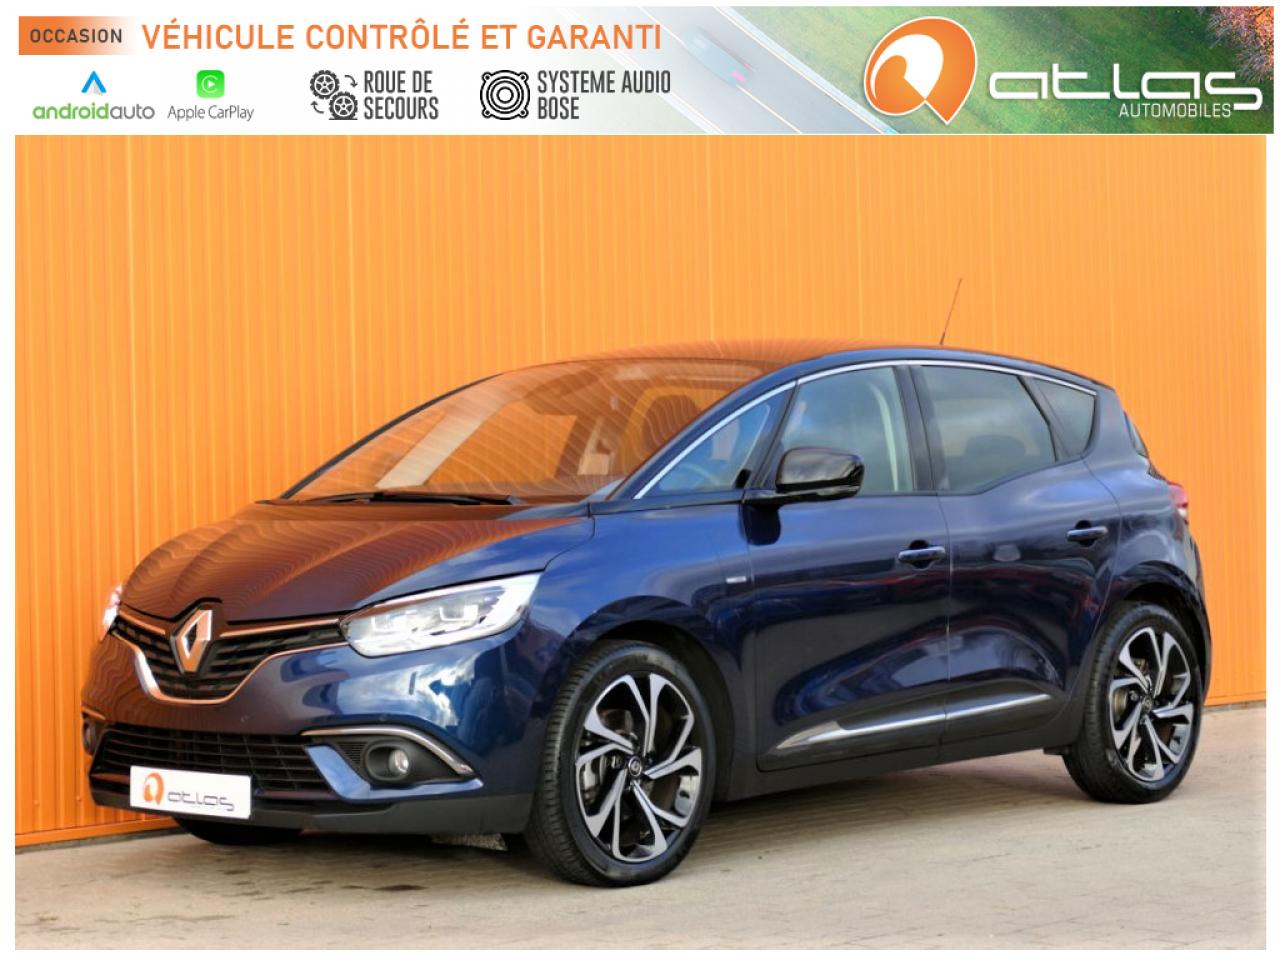 2019 Renault SCENIC